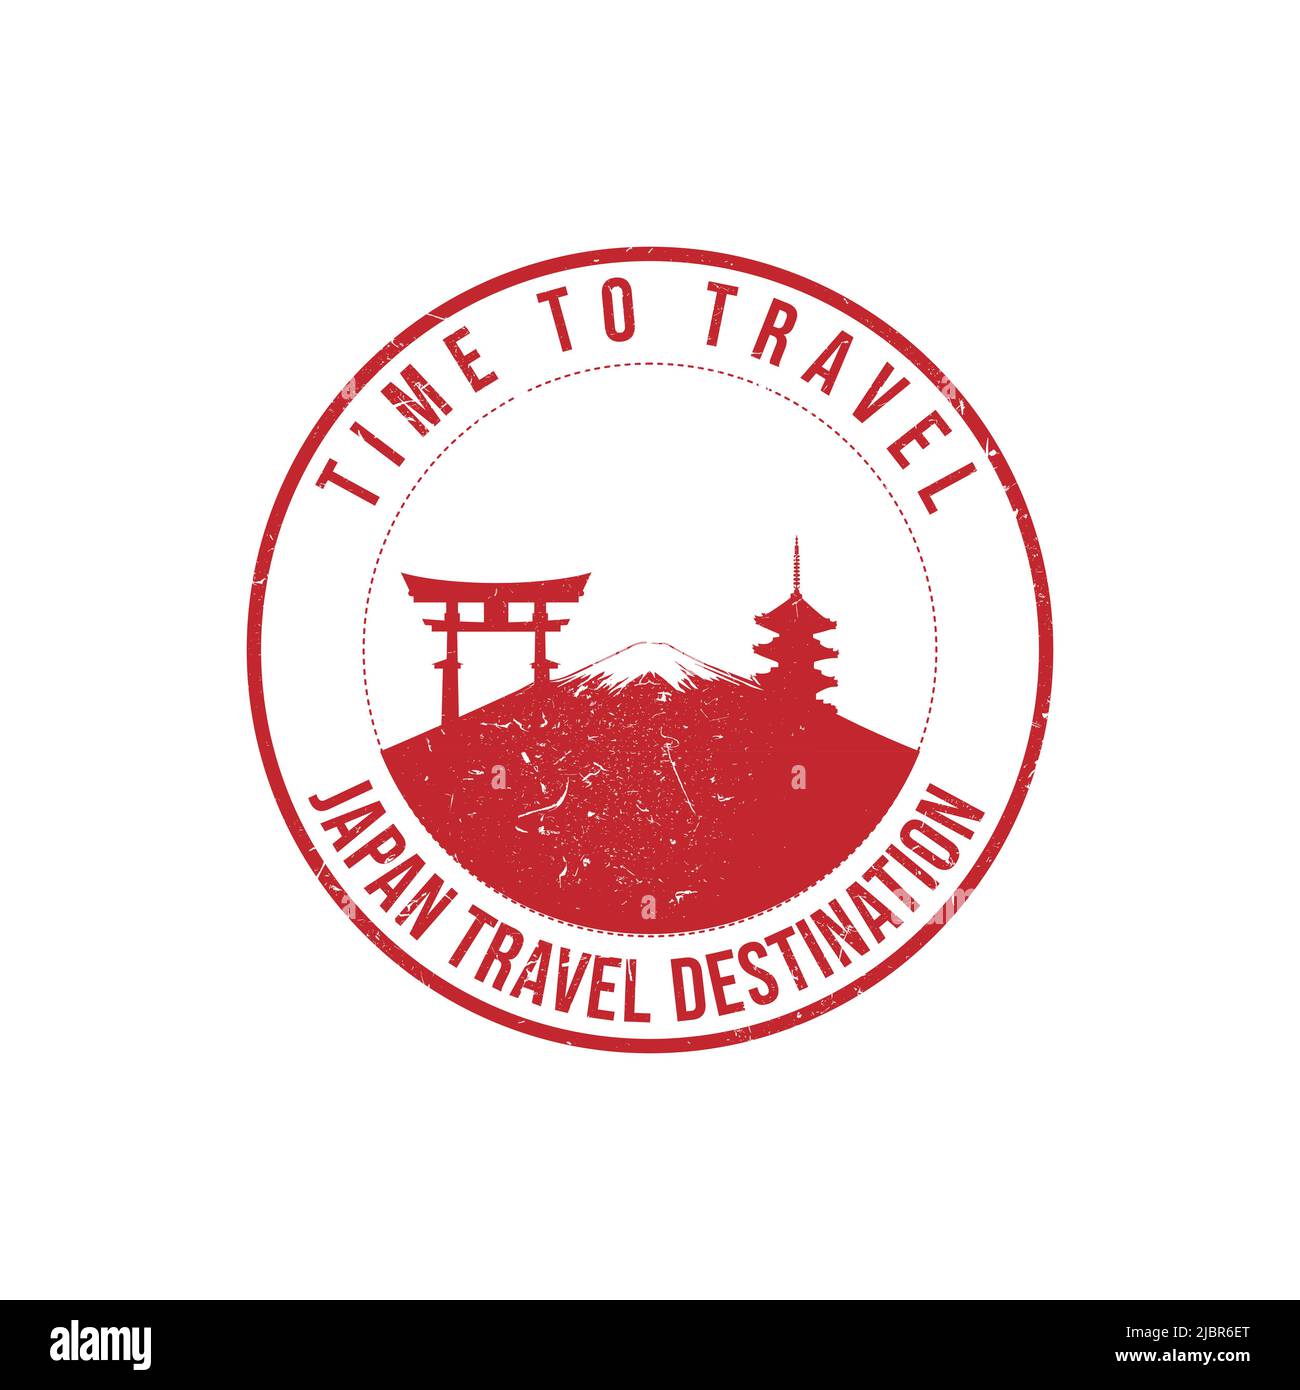 Sello de goma Grunge con el texto Japón destino de viaje escrito en el sello. Tiempo para viajar. Silueta del monte fuji y el templo de Japón historii Ilustración del Vector